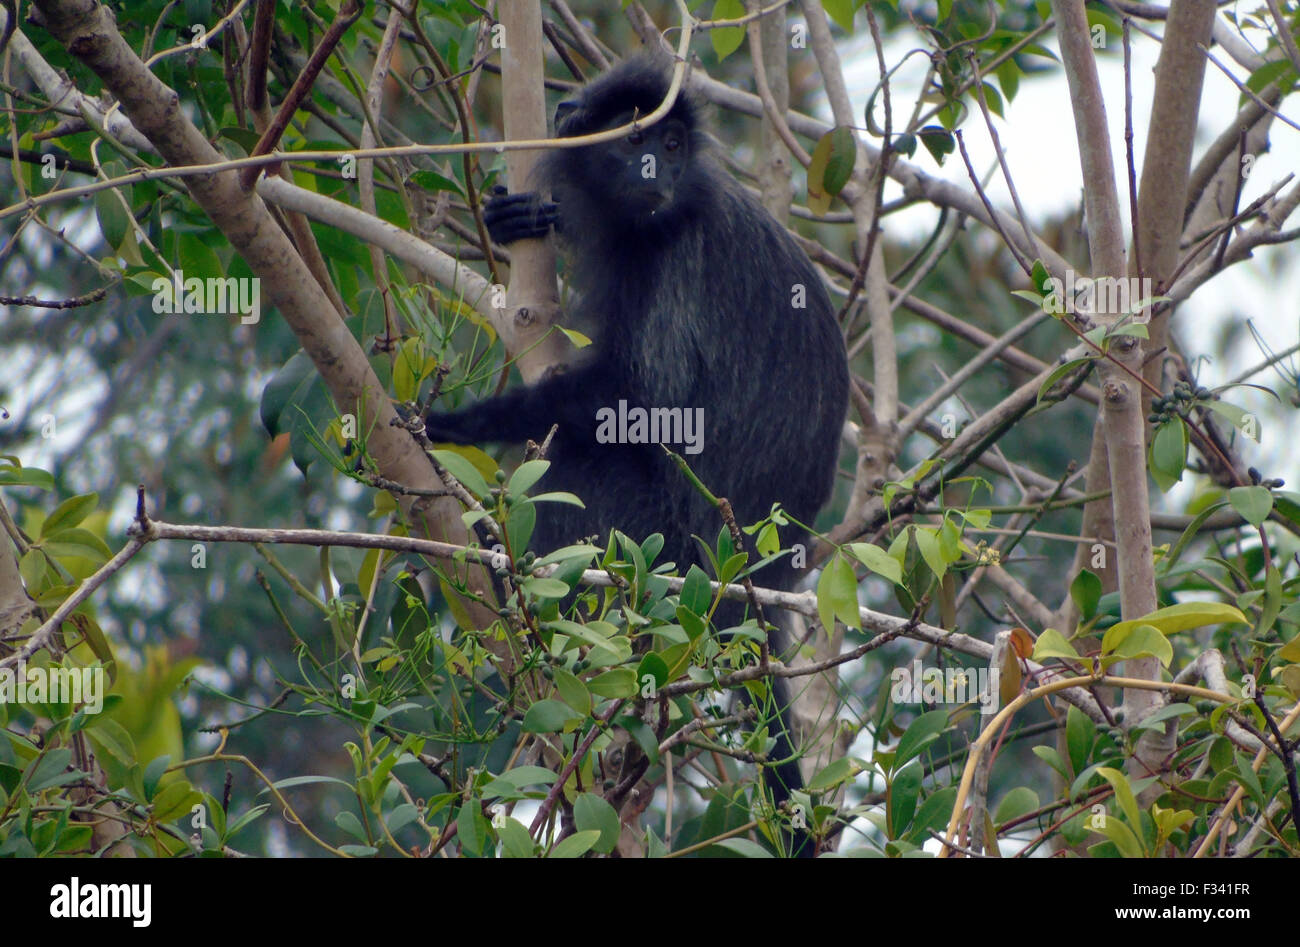 Bintan, Islas Riau, Indonesia. 29 Sep, 2015. BINTAN, Indonesia - 29 de  septiembre: El plateado lutung (Trachypithecus cristatus), también conocido  como la hoja de plata mono es un mono del Viejo Mundo